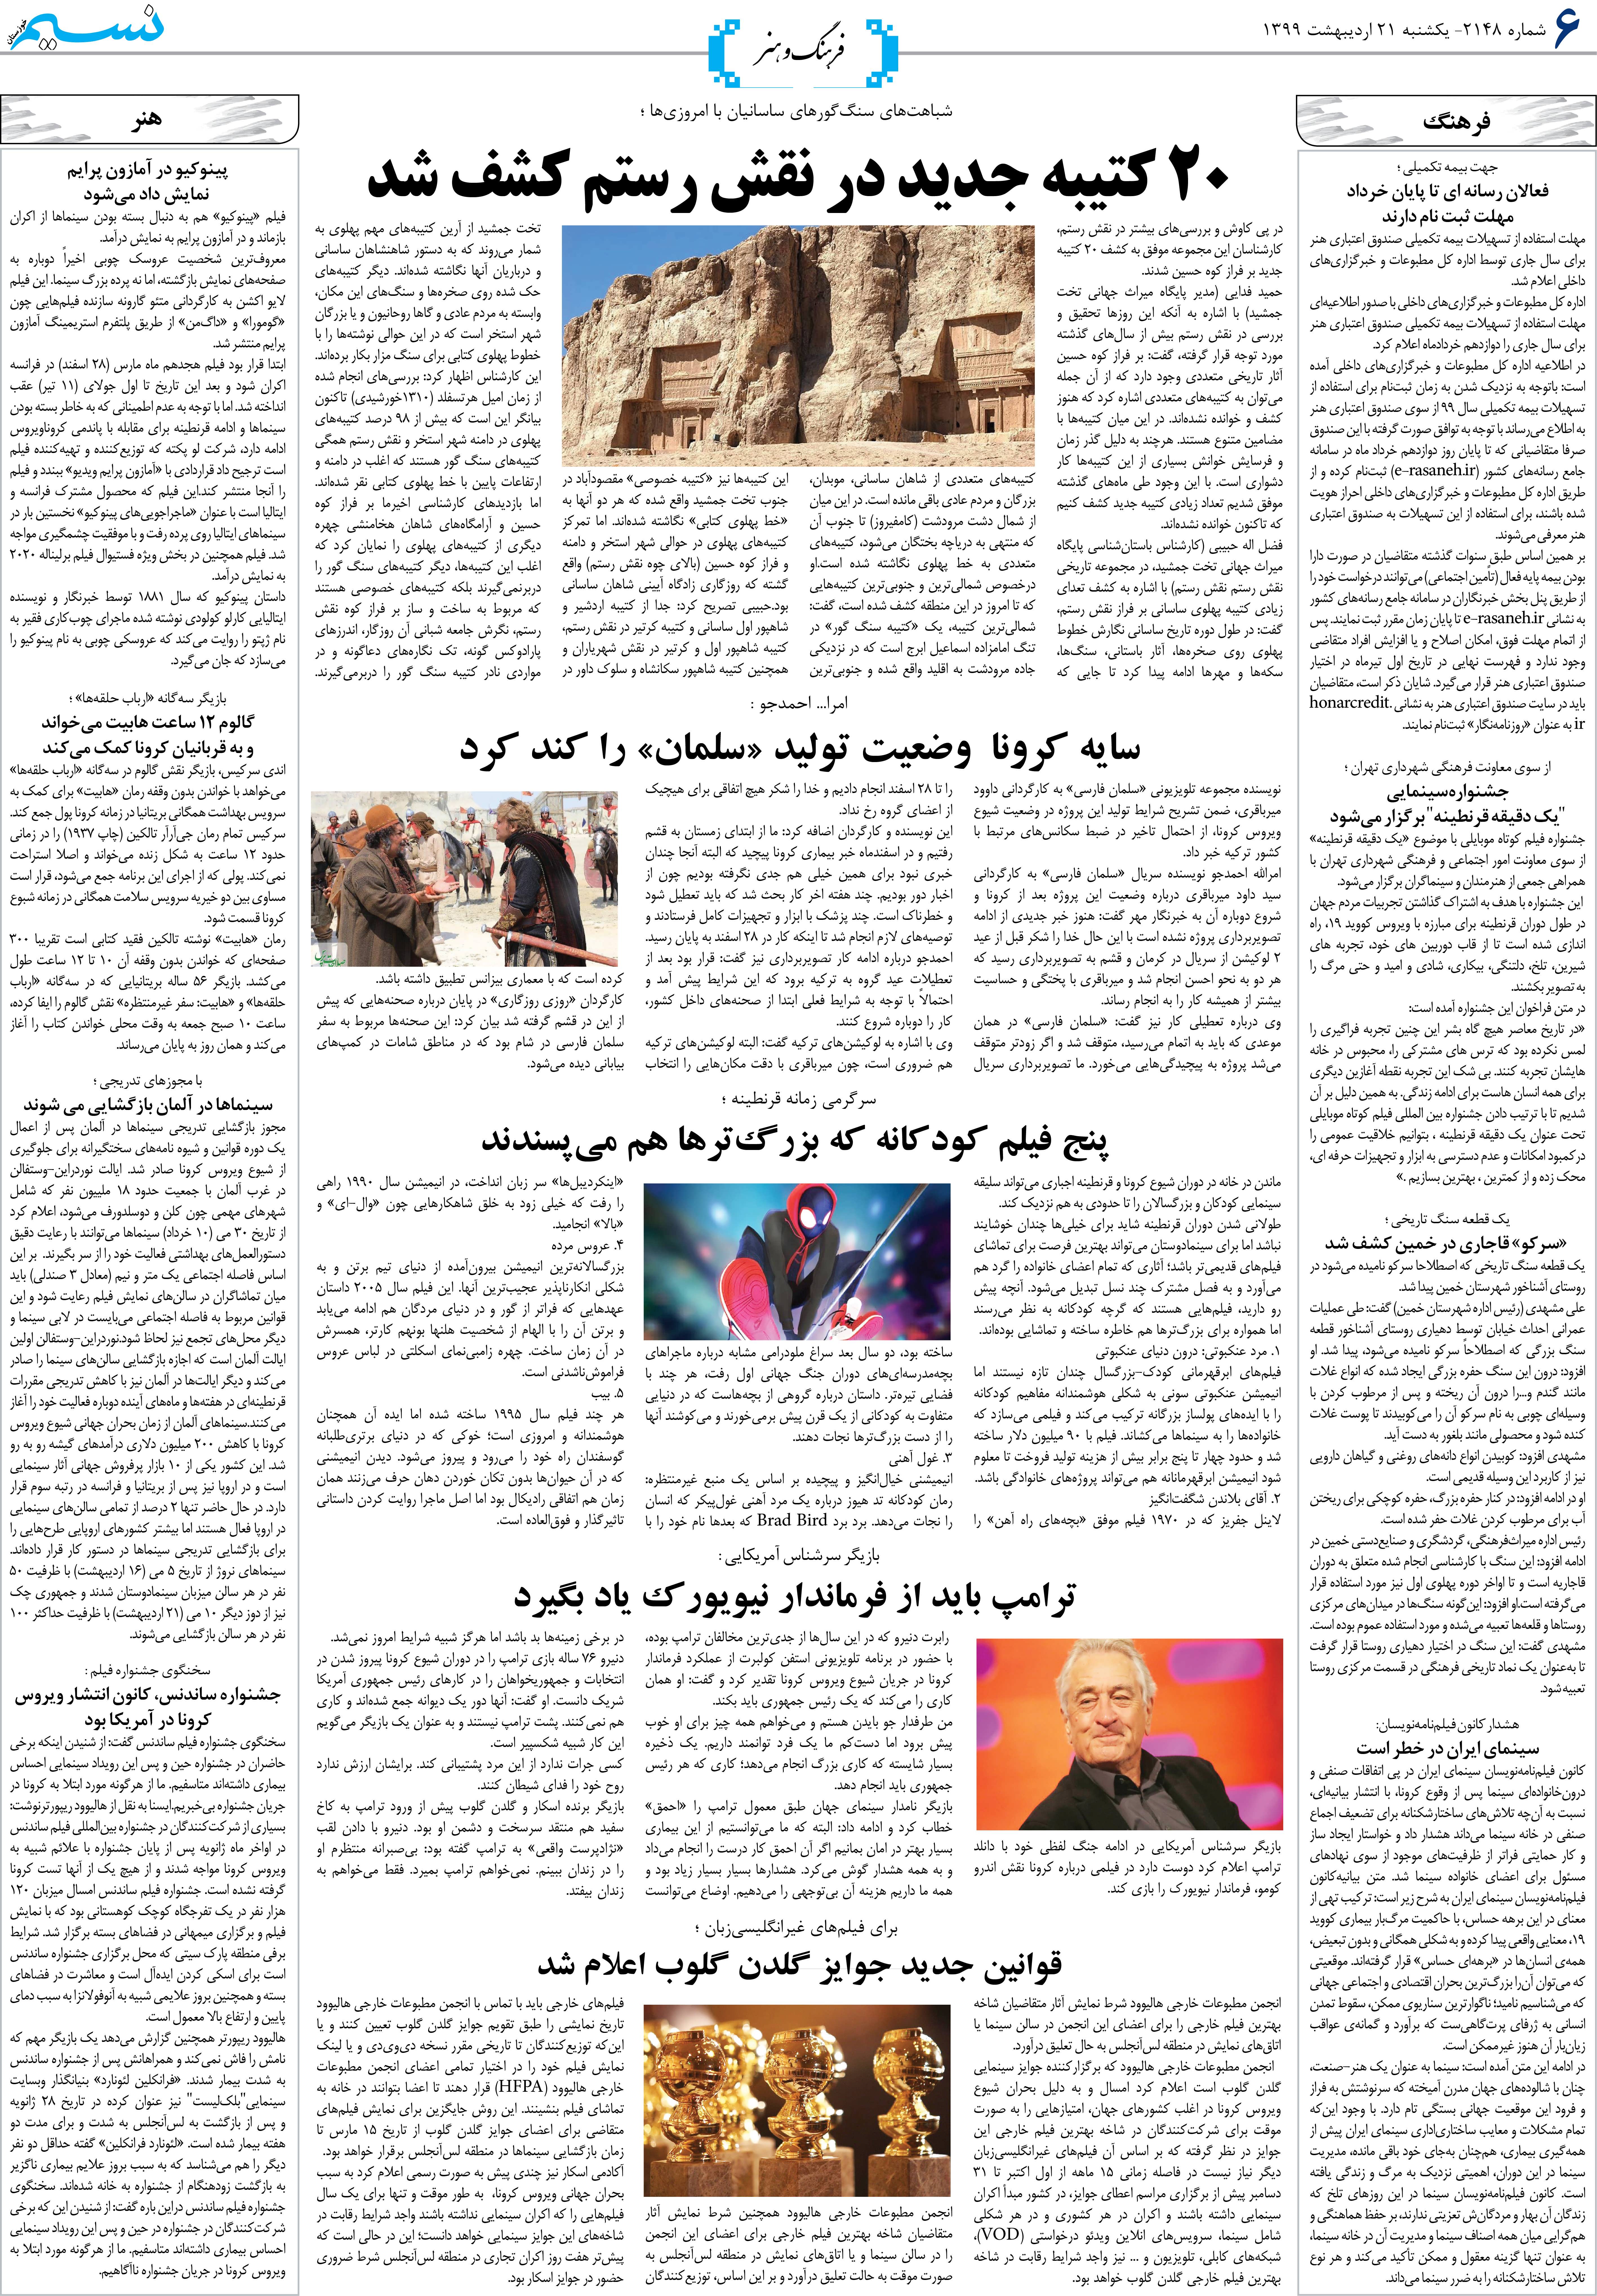 صفحه فرهنگ و هنر روزنامه نسیم شماره 2148